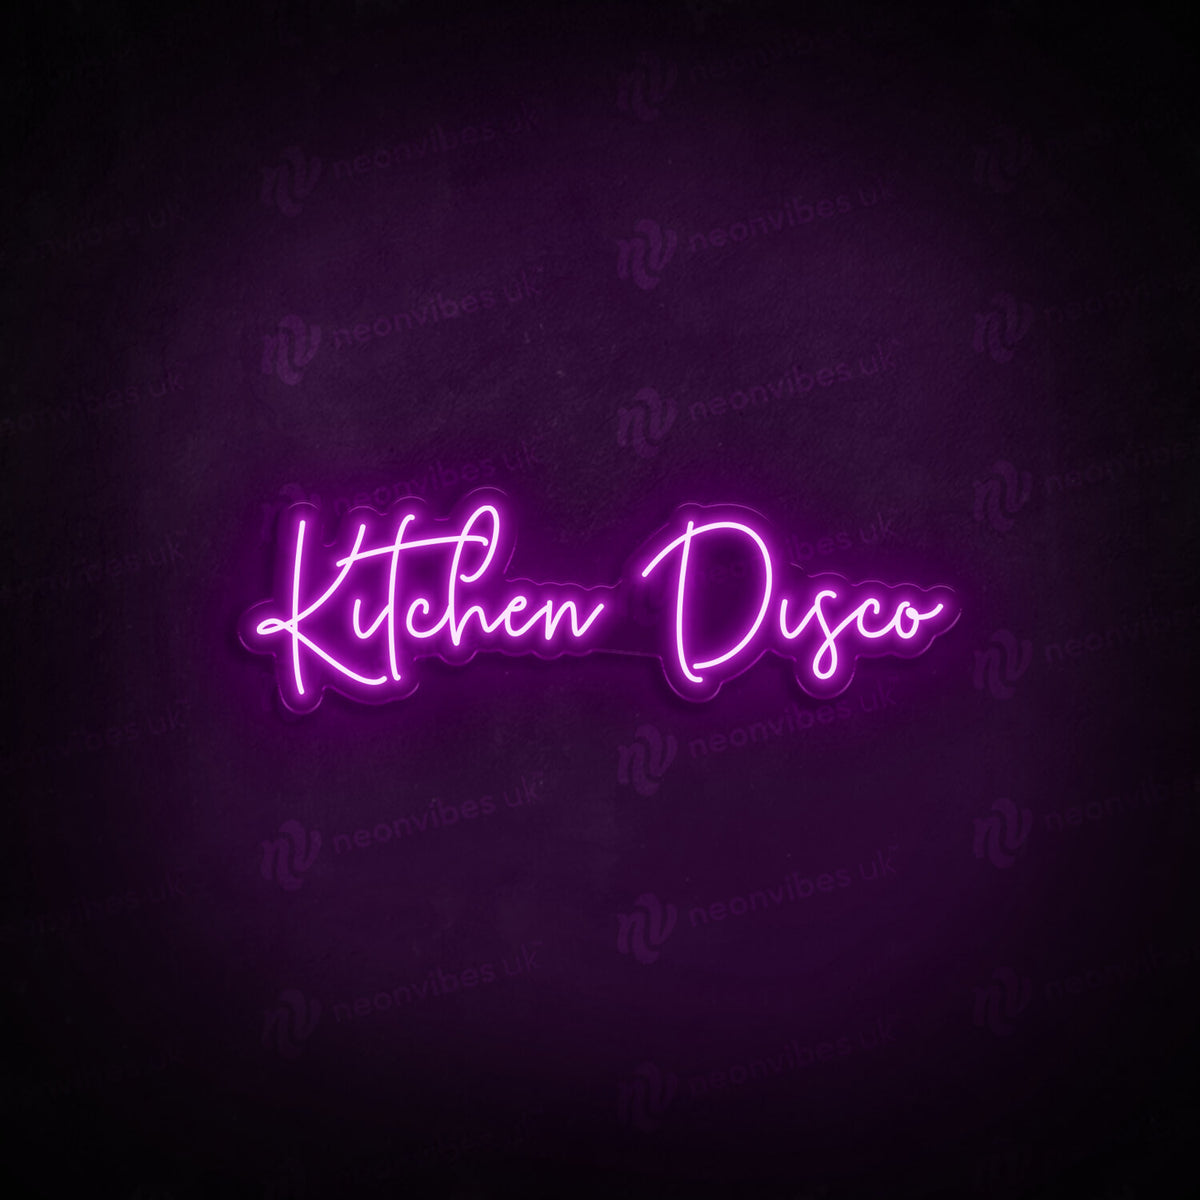 Kitchen Disco neon sign